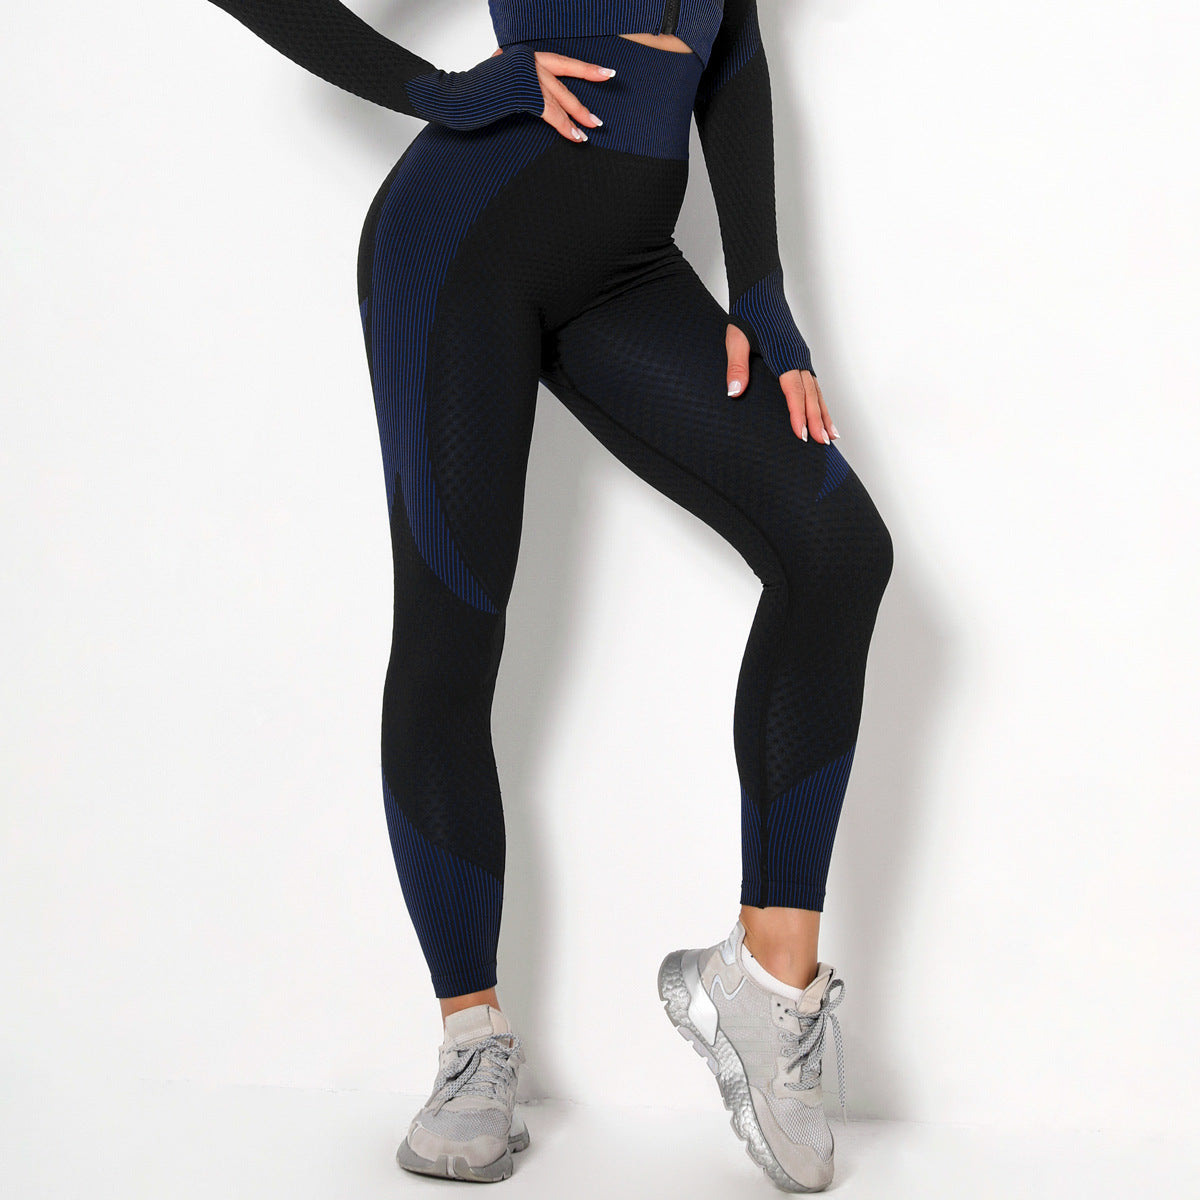 Yoga sets female sport gym suit - Plushlegacy